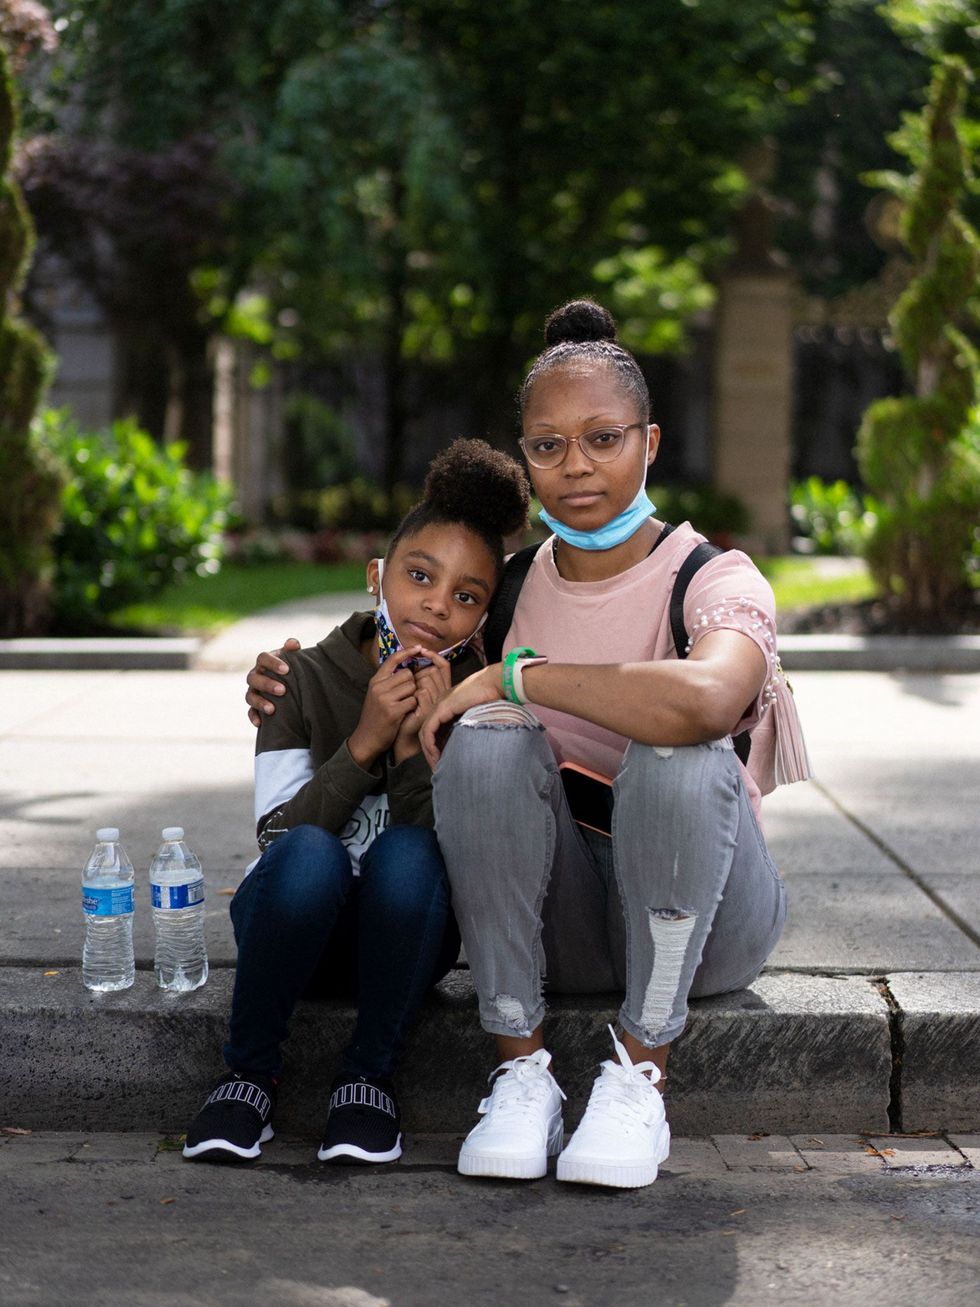 Studente Shel Evans 30 van de Howard University bracht haar dochter Christin Jackson 9 mee naar de Black Lives Matter Plaza bij het Witte Huis omdat ze wilde dat zij dit zag Dit is geschiedenis